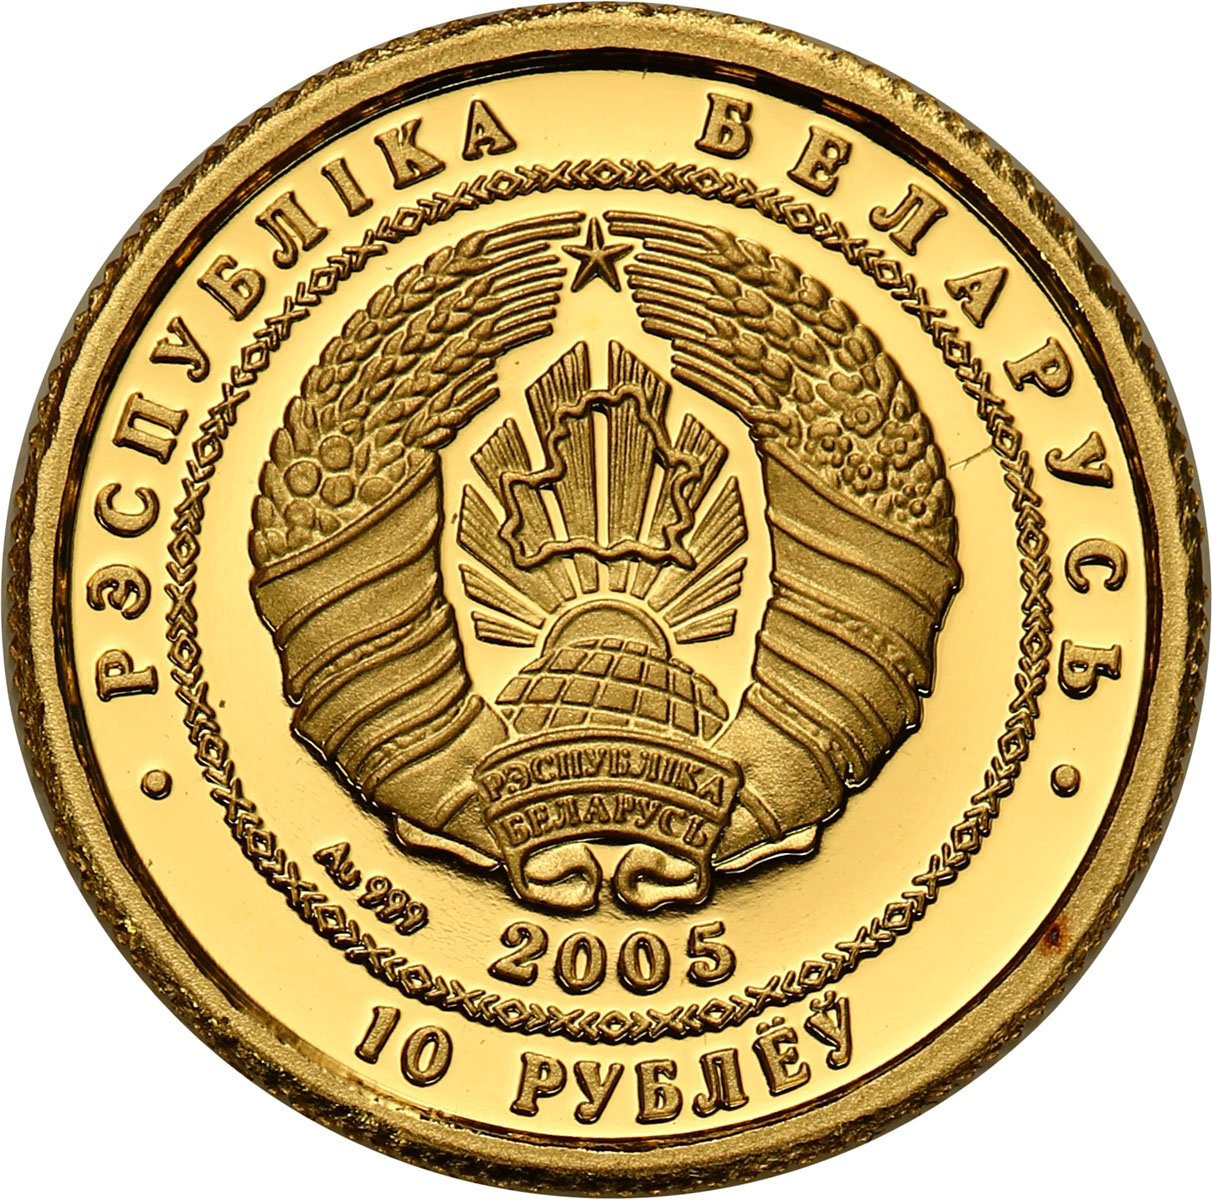 Białoruś. 10 rubli 2005 Balet -  Baletnica - 1/25 uncji złota